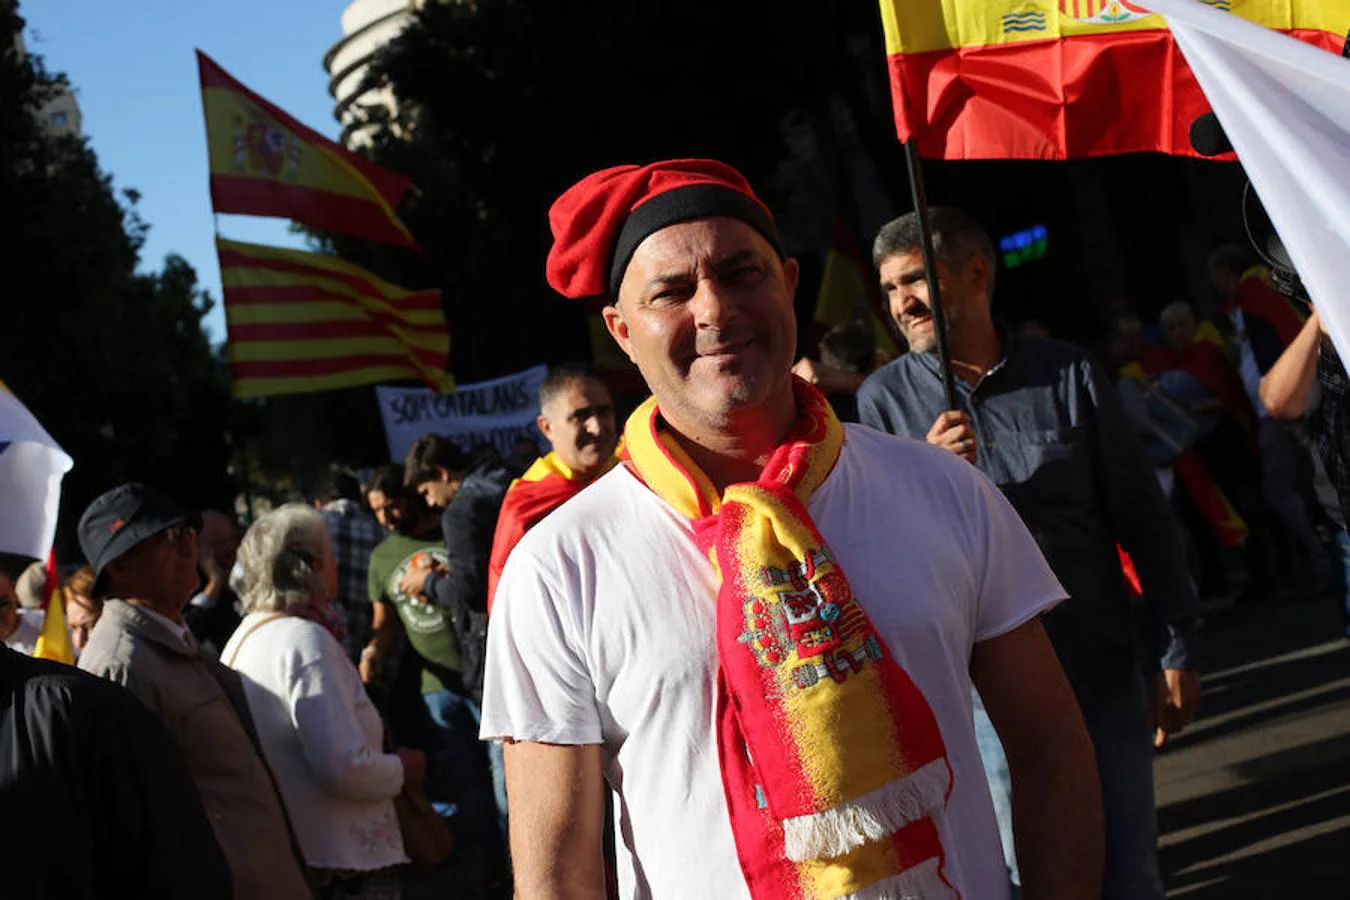 La manifestación de Barcelona por la unidad de España, en imágenes. 